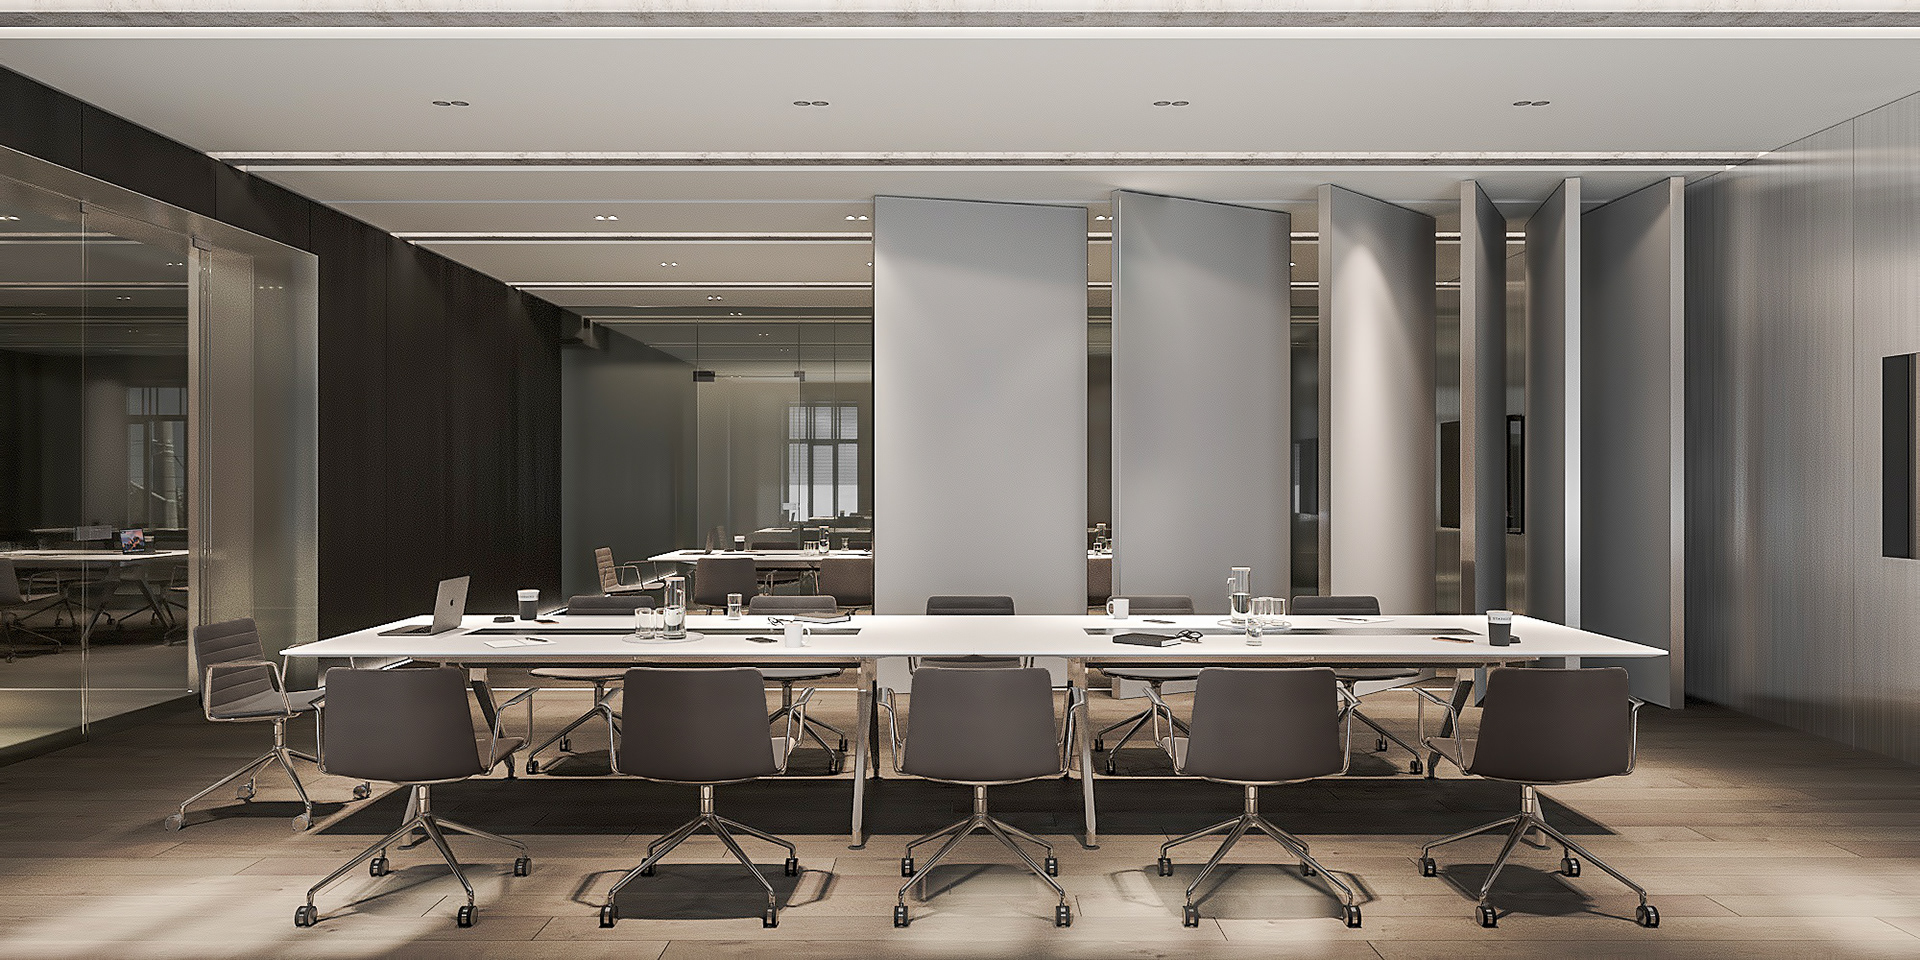 將會議室的隔間牆打開後可以形成更大的會議空間